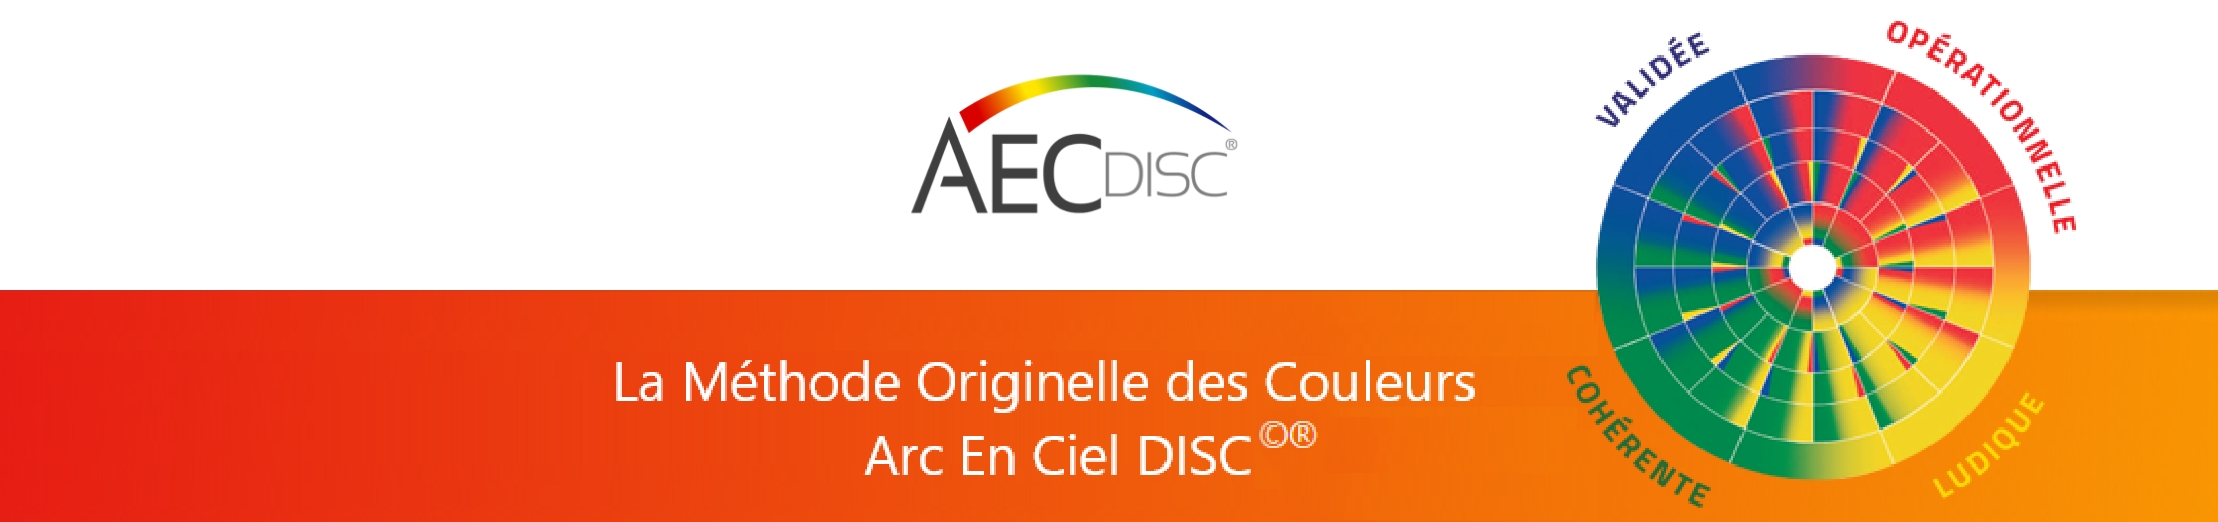 AEC Disc, la méthode originelle des couleurs